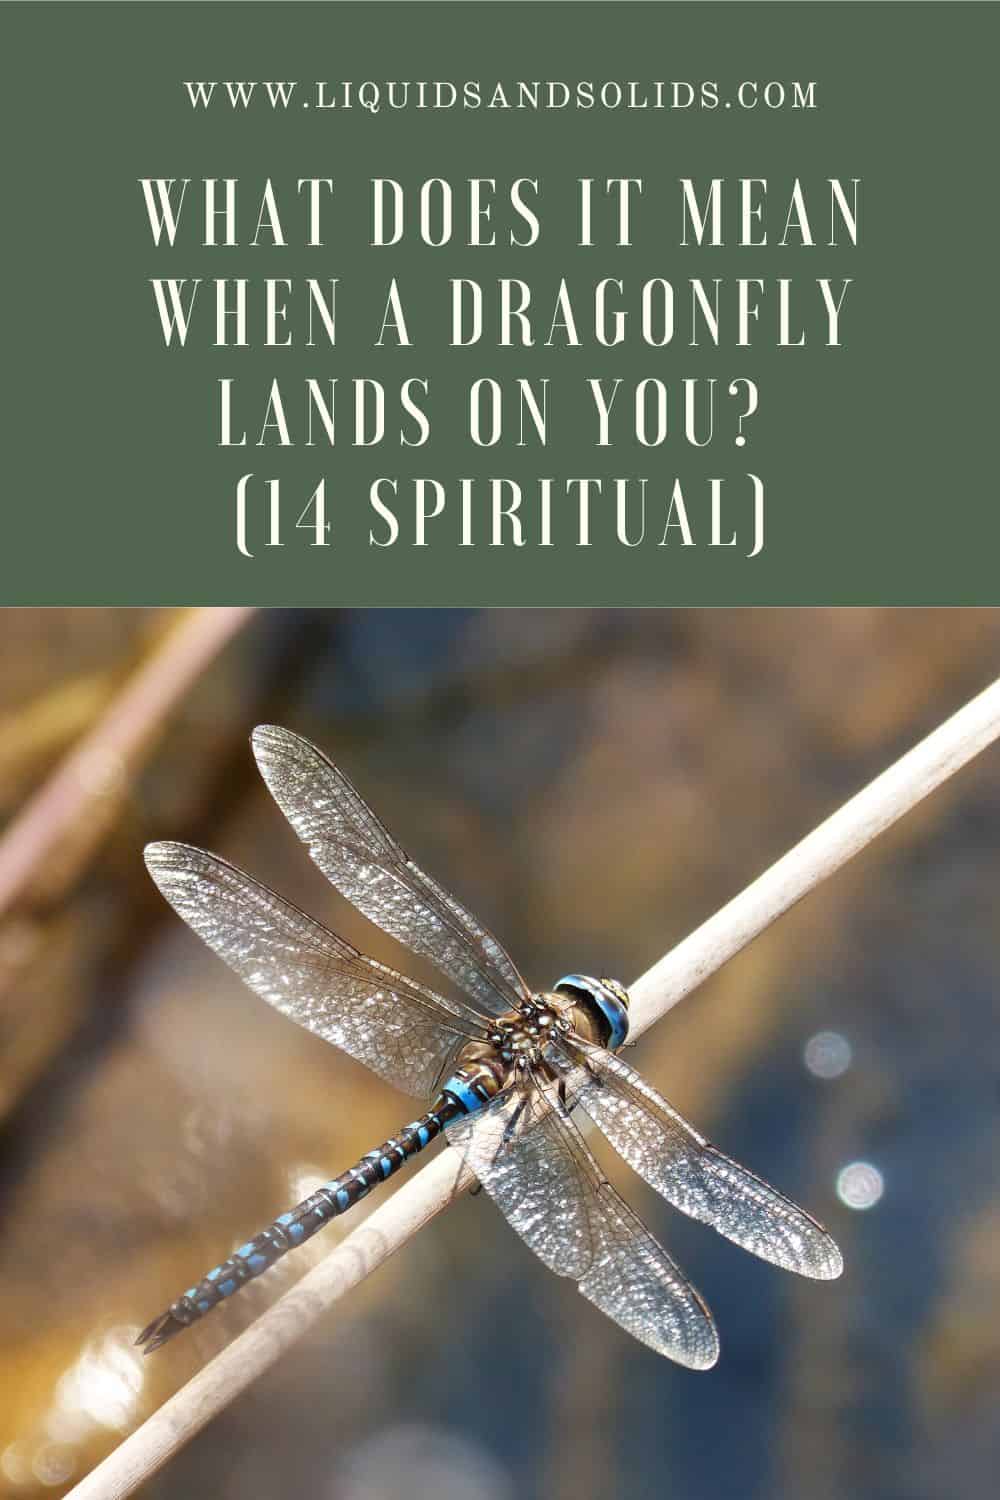  Hvad betyder det, når en guldsmed lander på dig? (14 spirituelle betydninger)